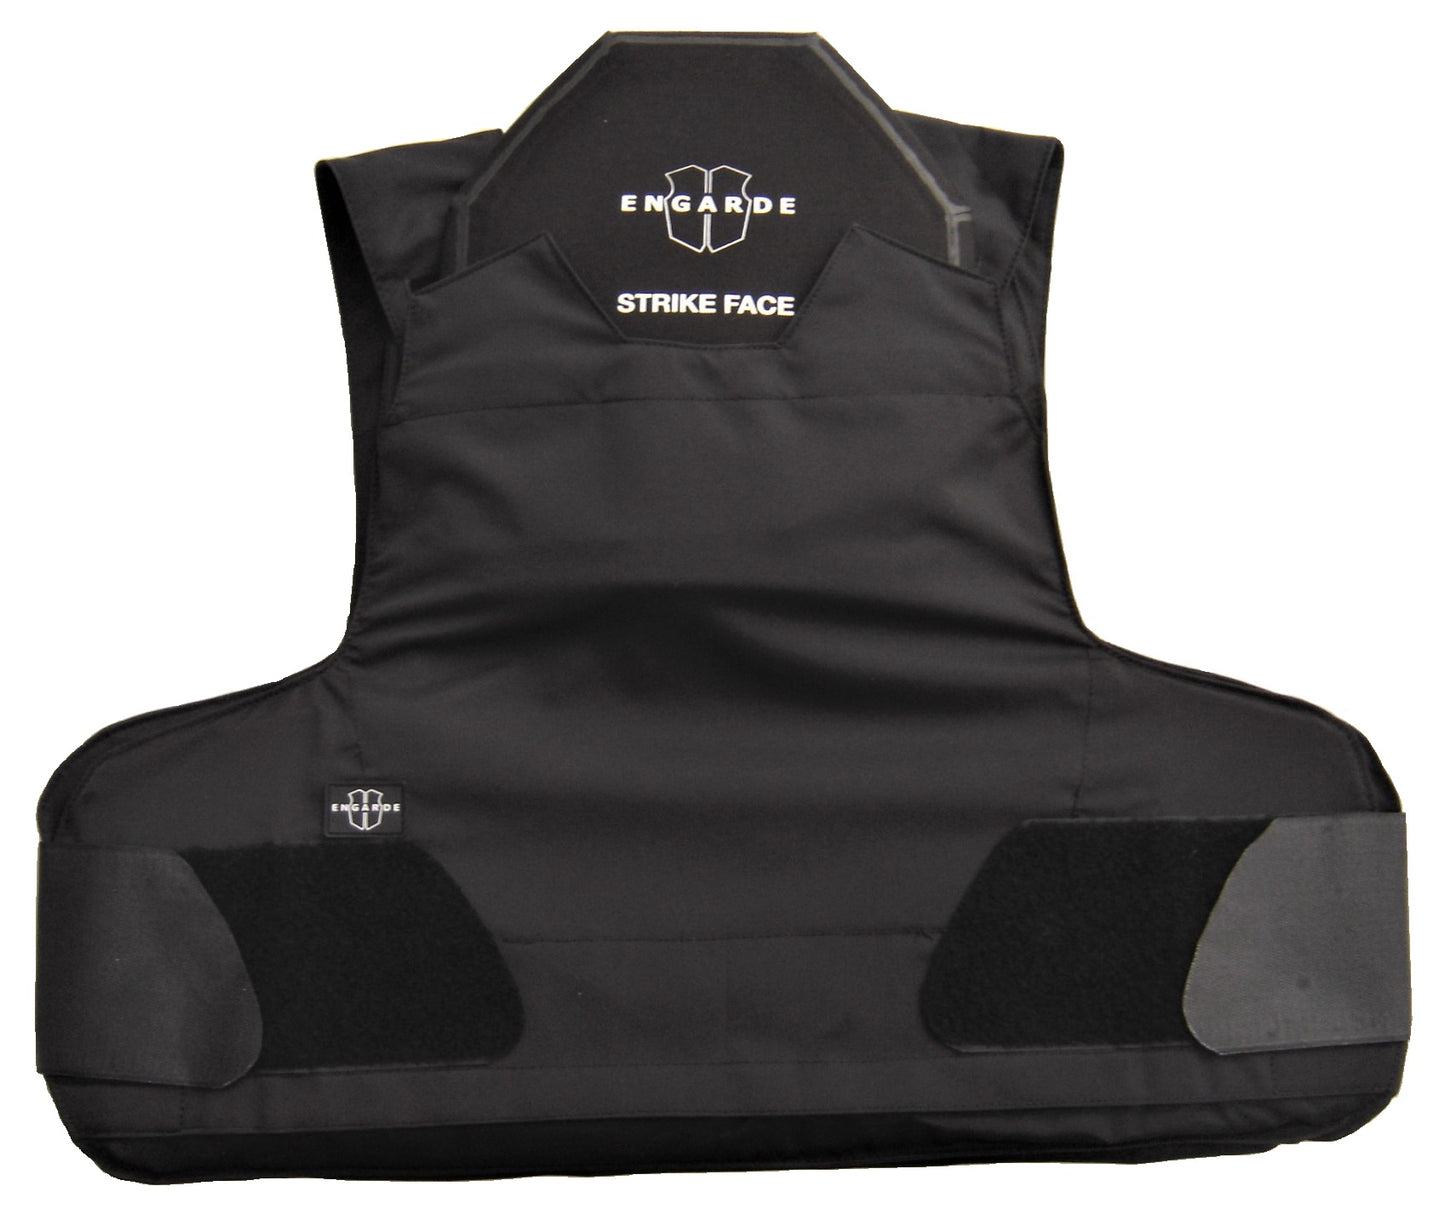 Dual-Use bulletproof vest class NIJ-4 ICW FLEX-PRO black Engarde